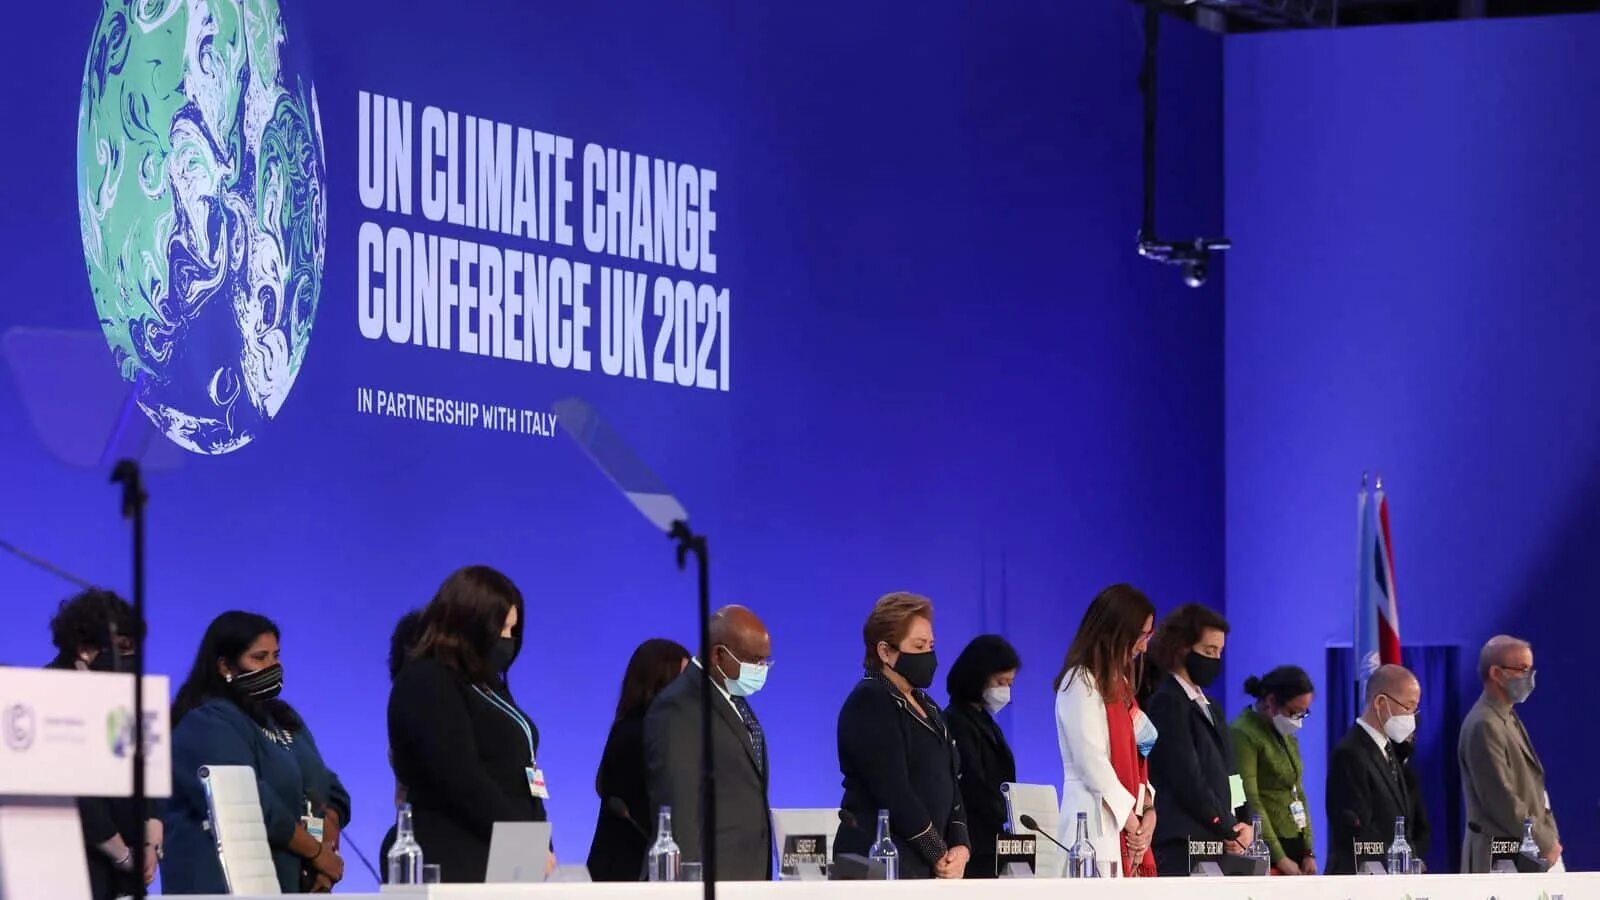 1 конференция оон. 26 Конференция ООН по климату в Глазго. Конференция ООН по изменению климата 2021. Климатический саммит ООН. 26 Конференция ООН по климату в Глазго 2021.